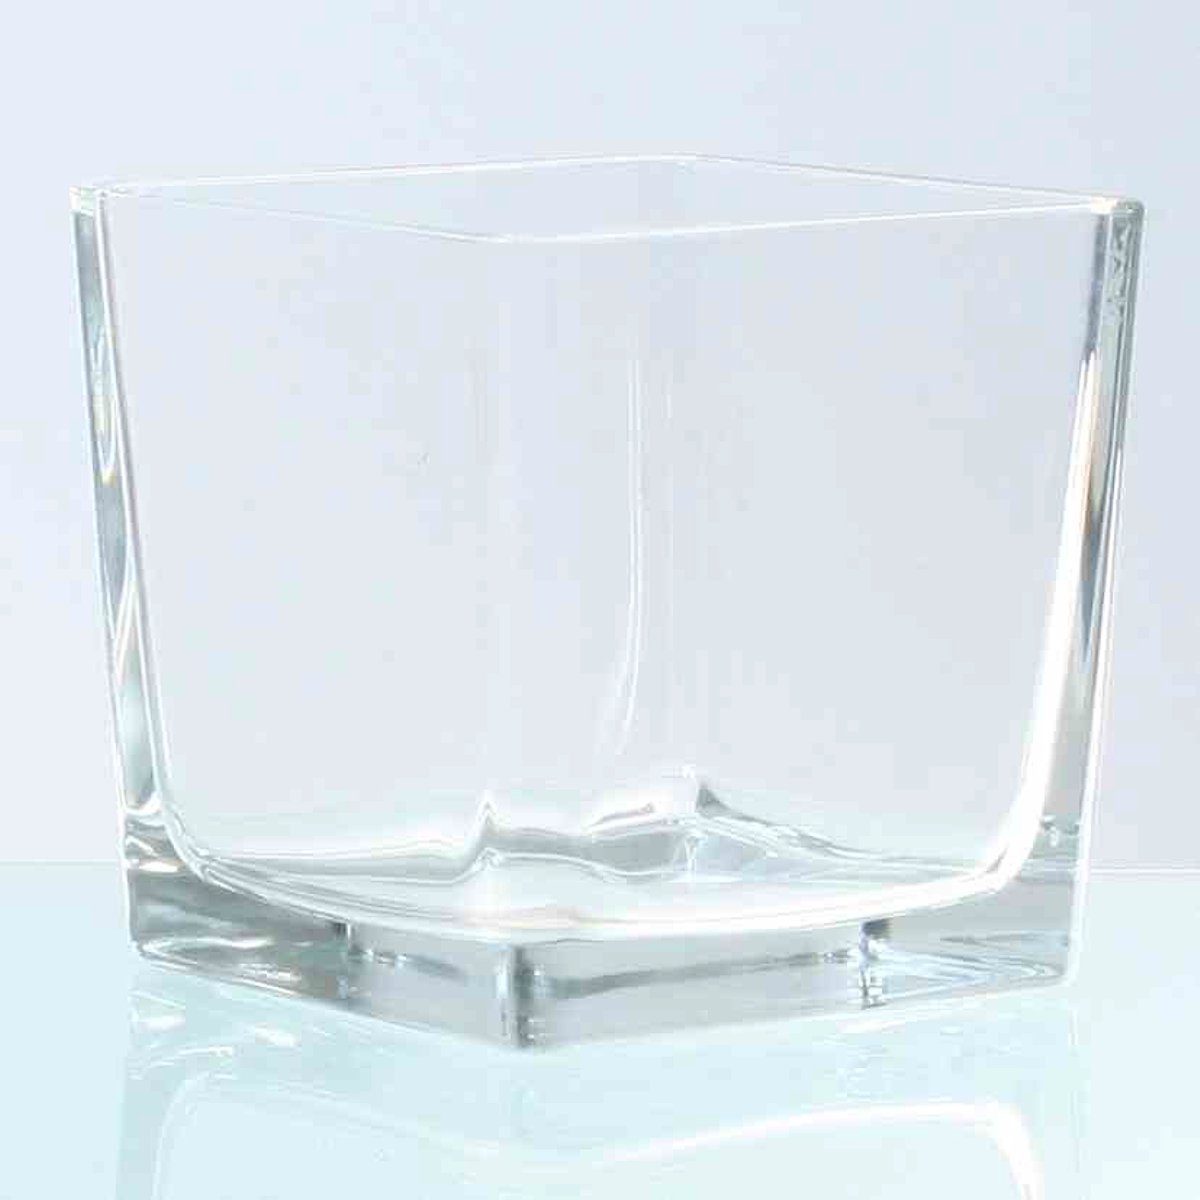 Linoows Teelichthalter Windlicht-Glas, Glastopf Kubus, Aufbewahrungsglas (1x), Windlicht Kerzenständer aus schwerem Glas